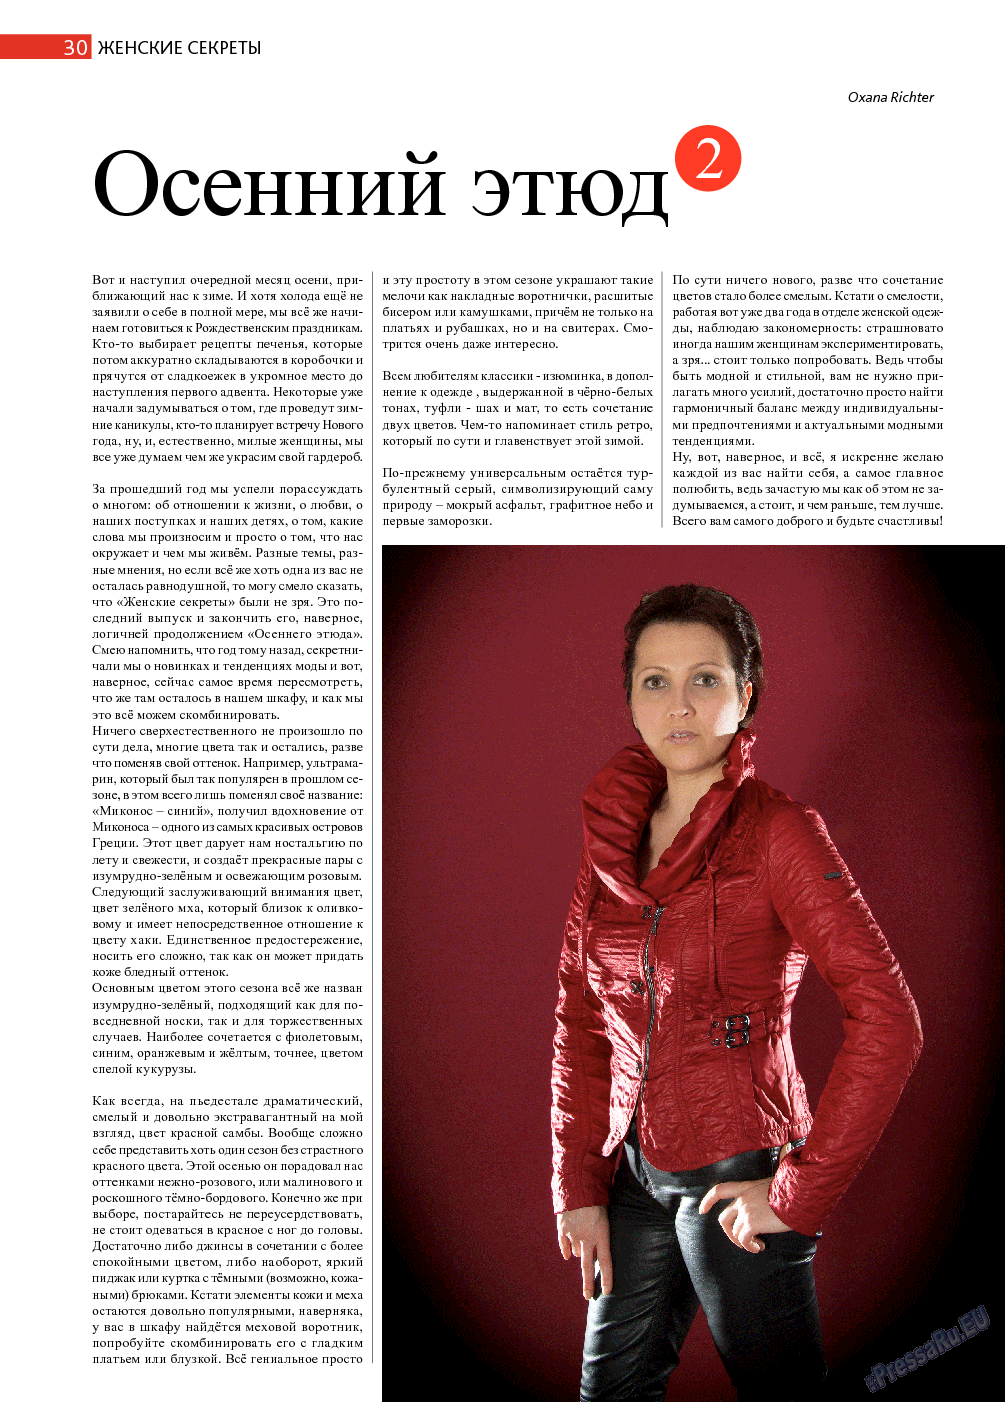 Афиша Augsburg (журнал). 2013 год, номер 11, стр. 30